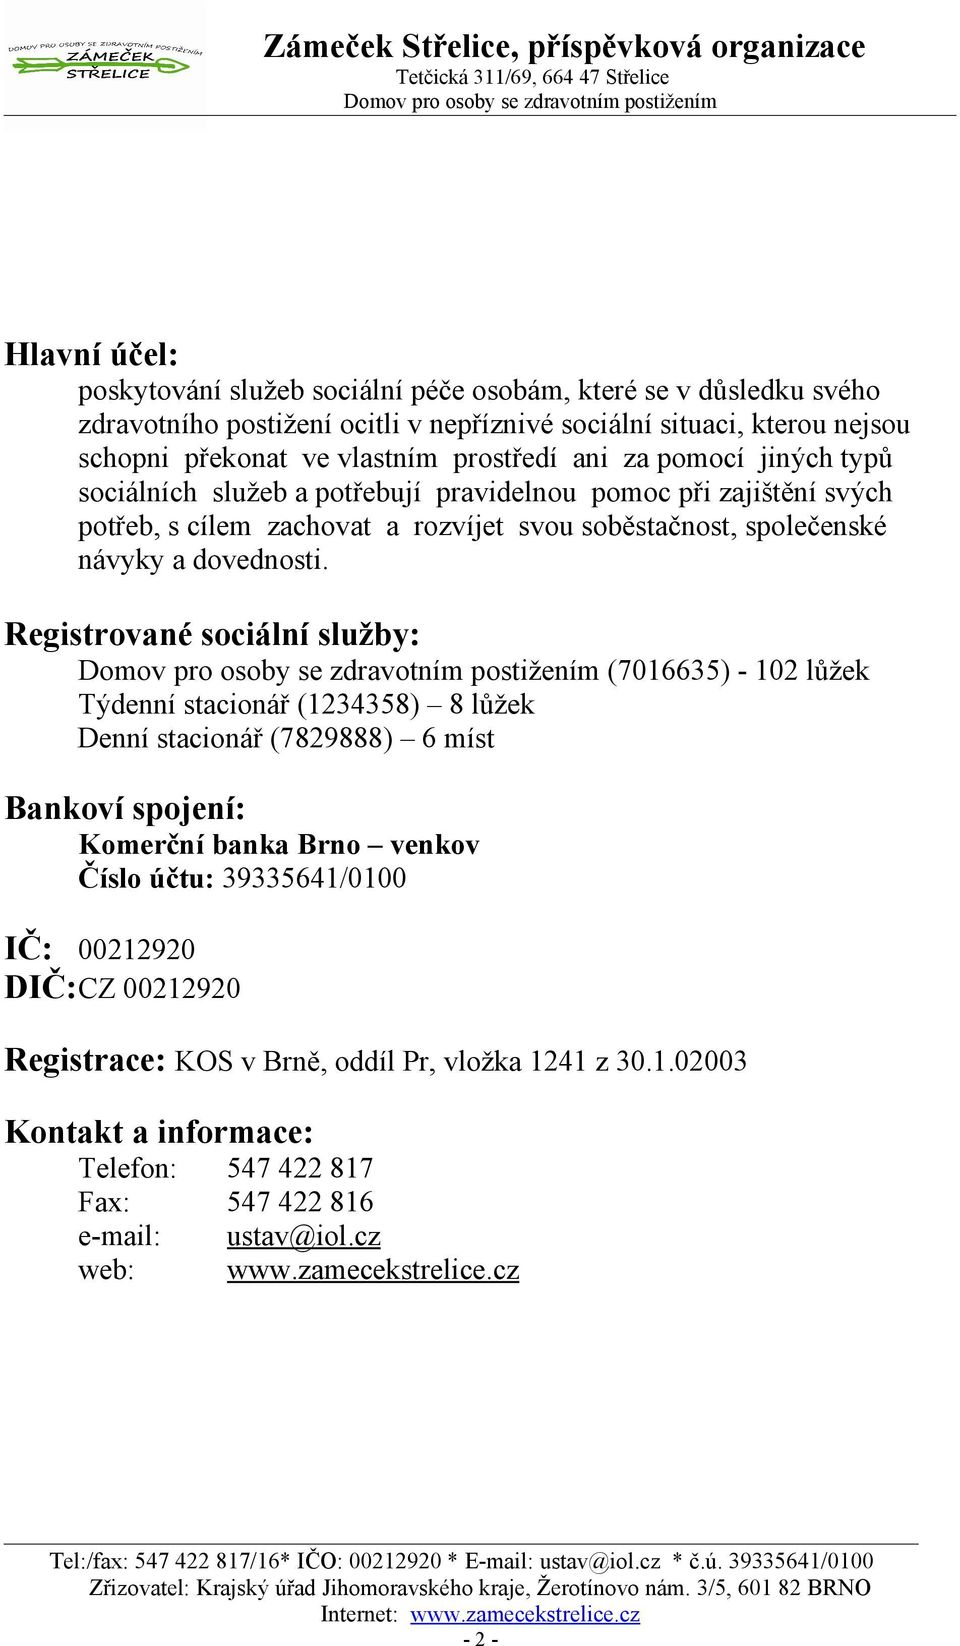 Registrované sociální služby: (76635) - 2 lůžek Týdenní stacionář (234358) 8 lůžek Denní stacionář (7829888) 6 míst Bankoví spojení: Komerční banka Brno venkov Číslo účtu: 3933564/ IČ: 2292 DIČ: CZ